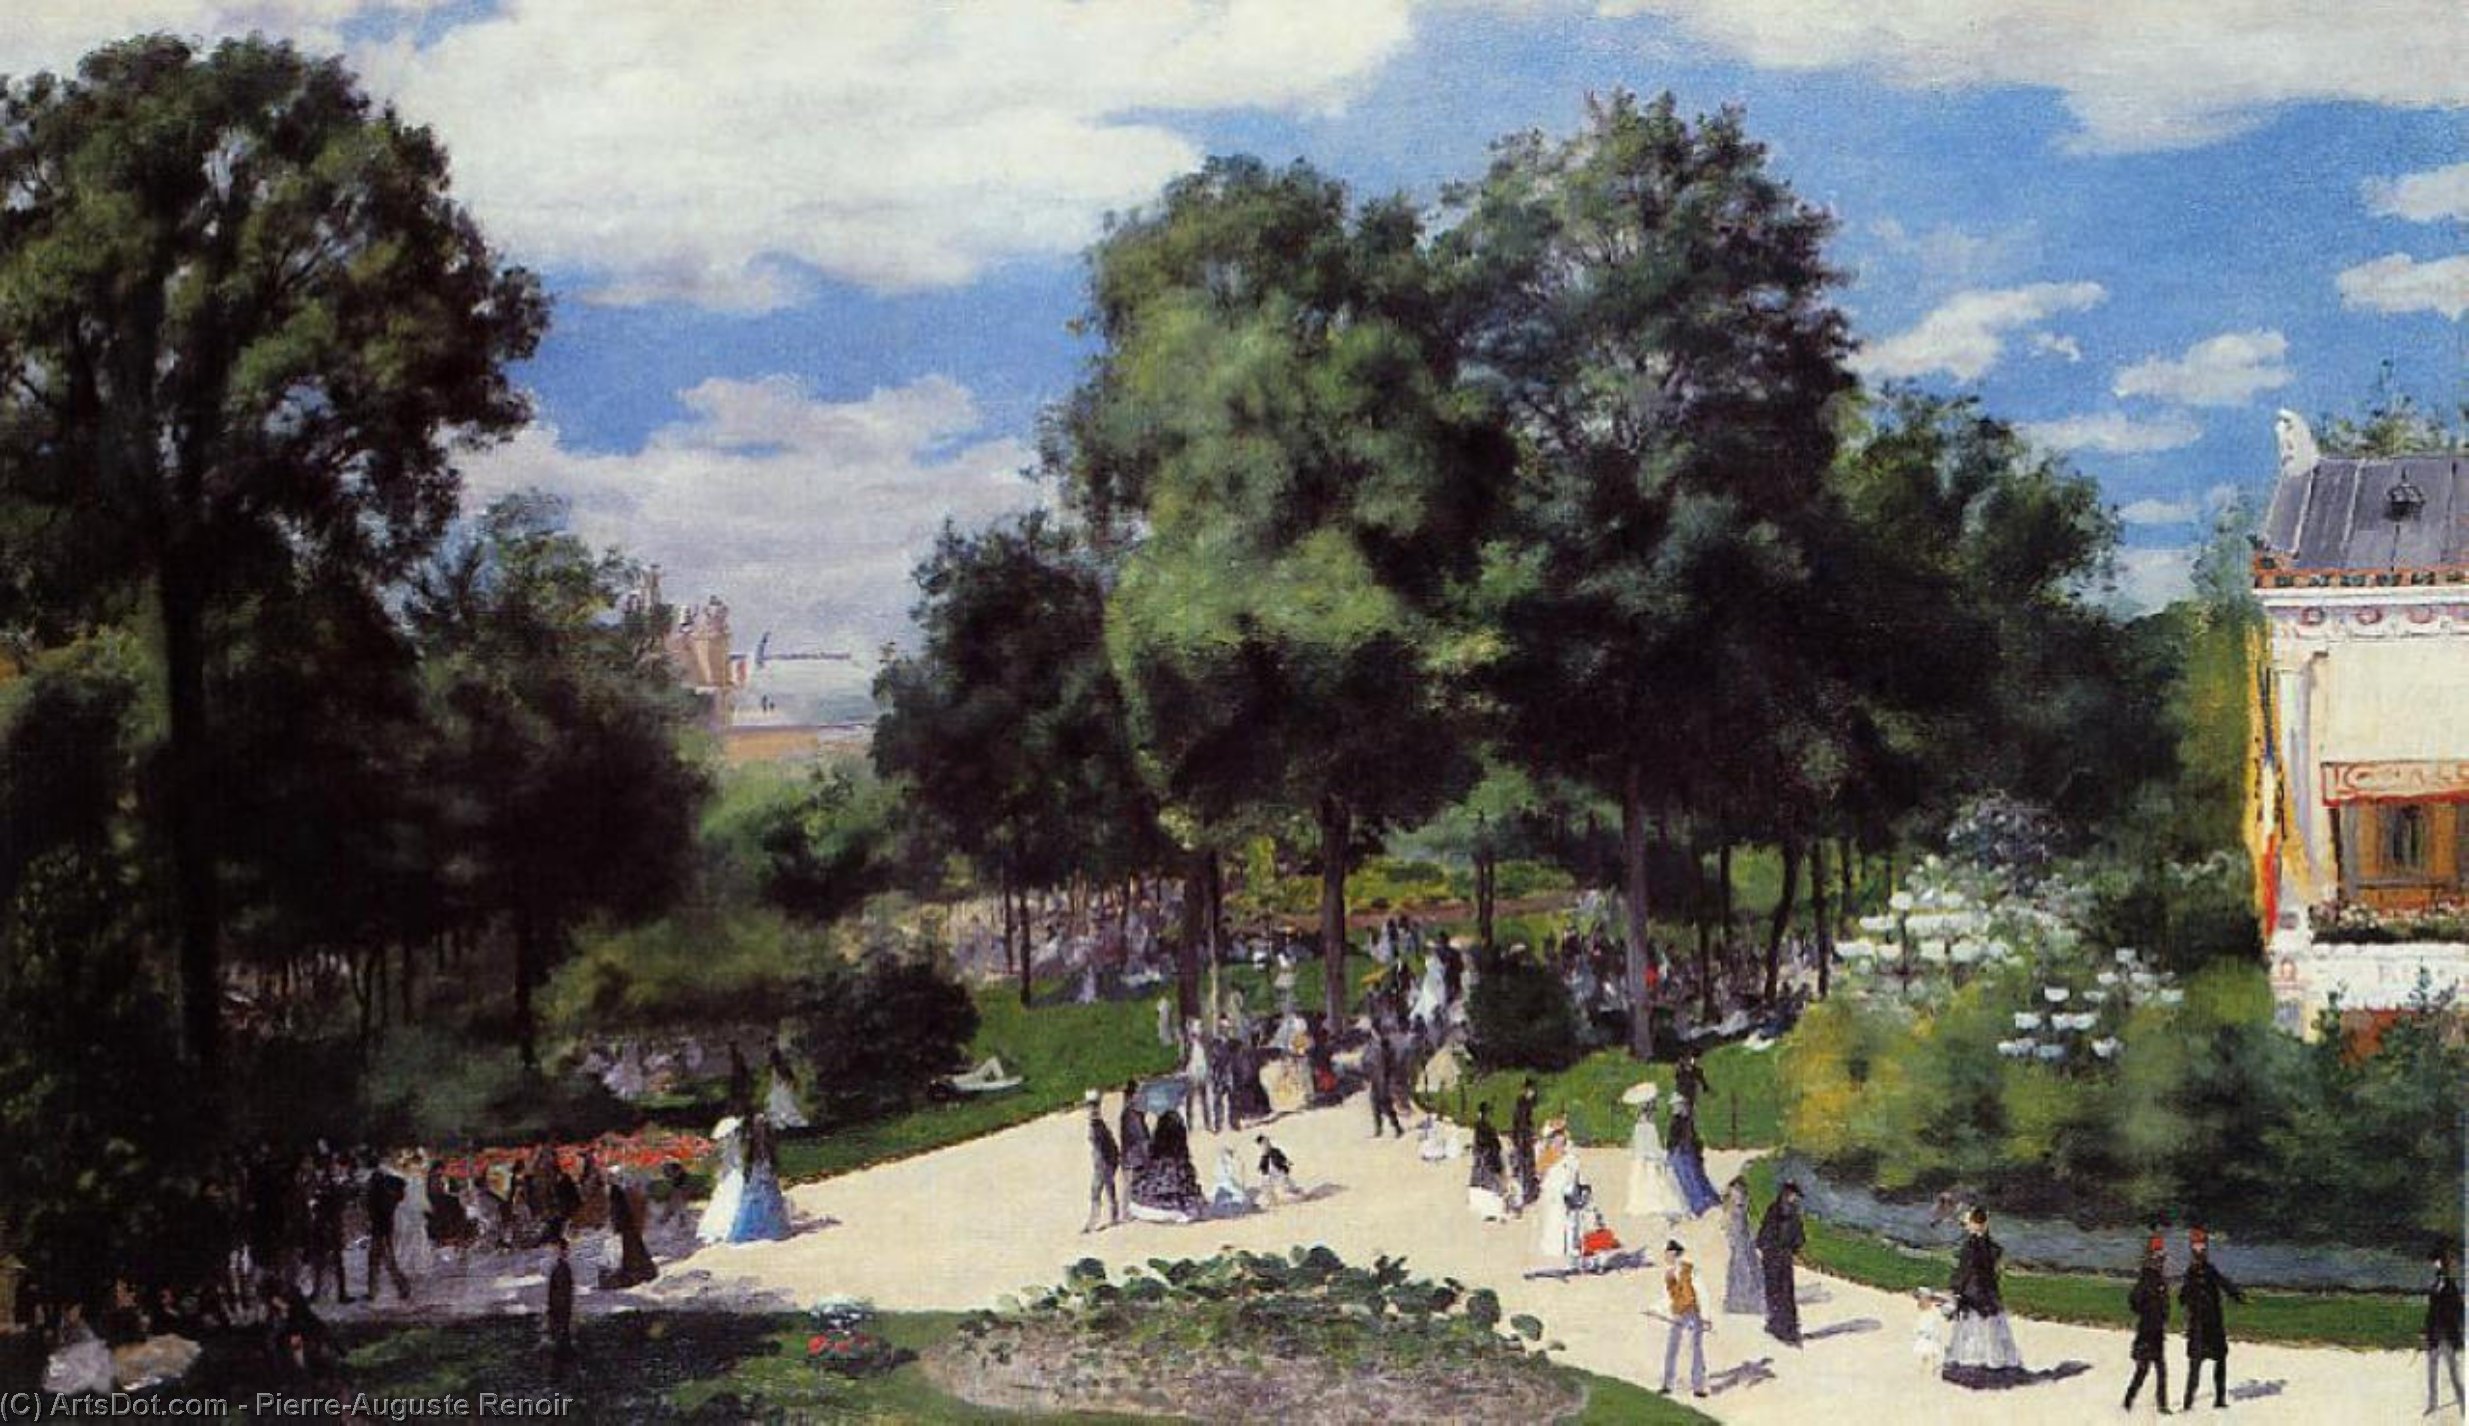 WikiOO.org - אנציקלופדיה לאמנויות יפות - ציור, יצירות אמנות Pierre-Auguste Renoir - The Champs-Elysees during the Paris Fair of 1867